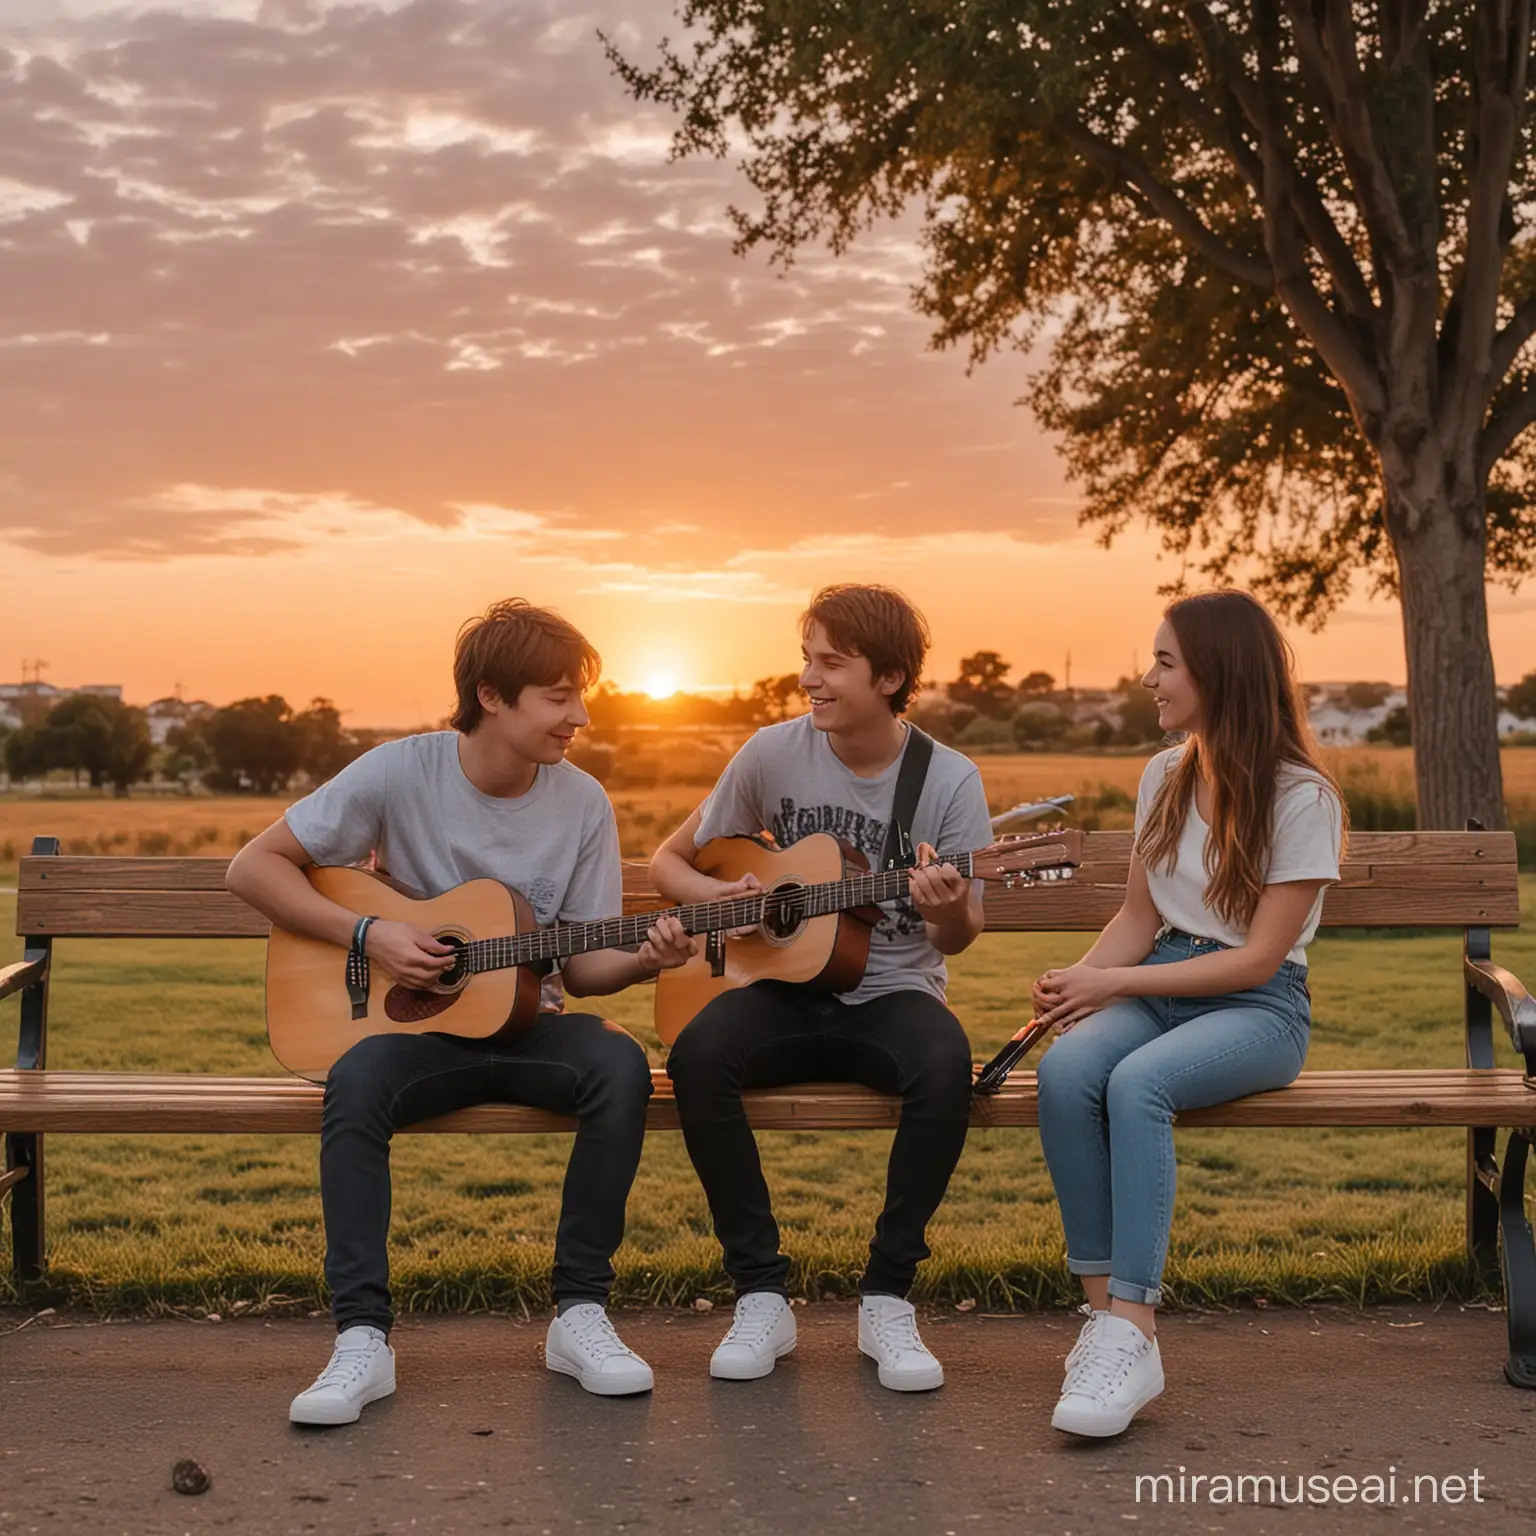 Chica sentada en una banca junto a chico con una guitarra con un atardecer de fondo